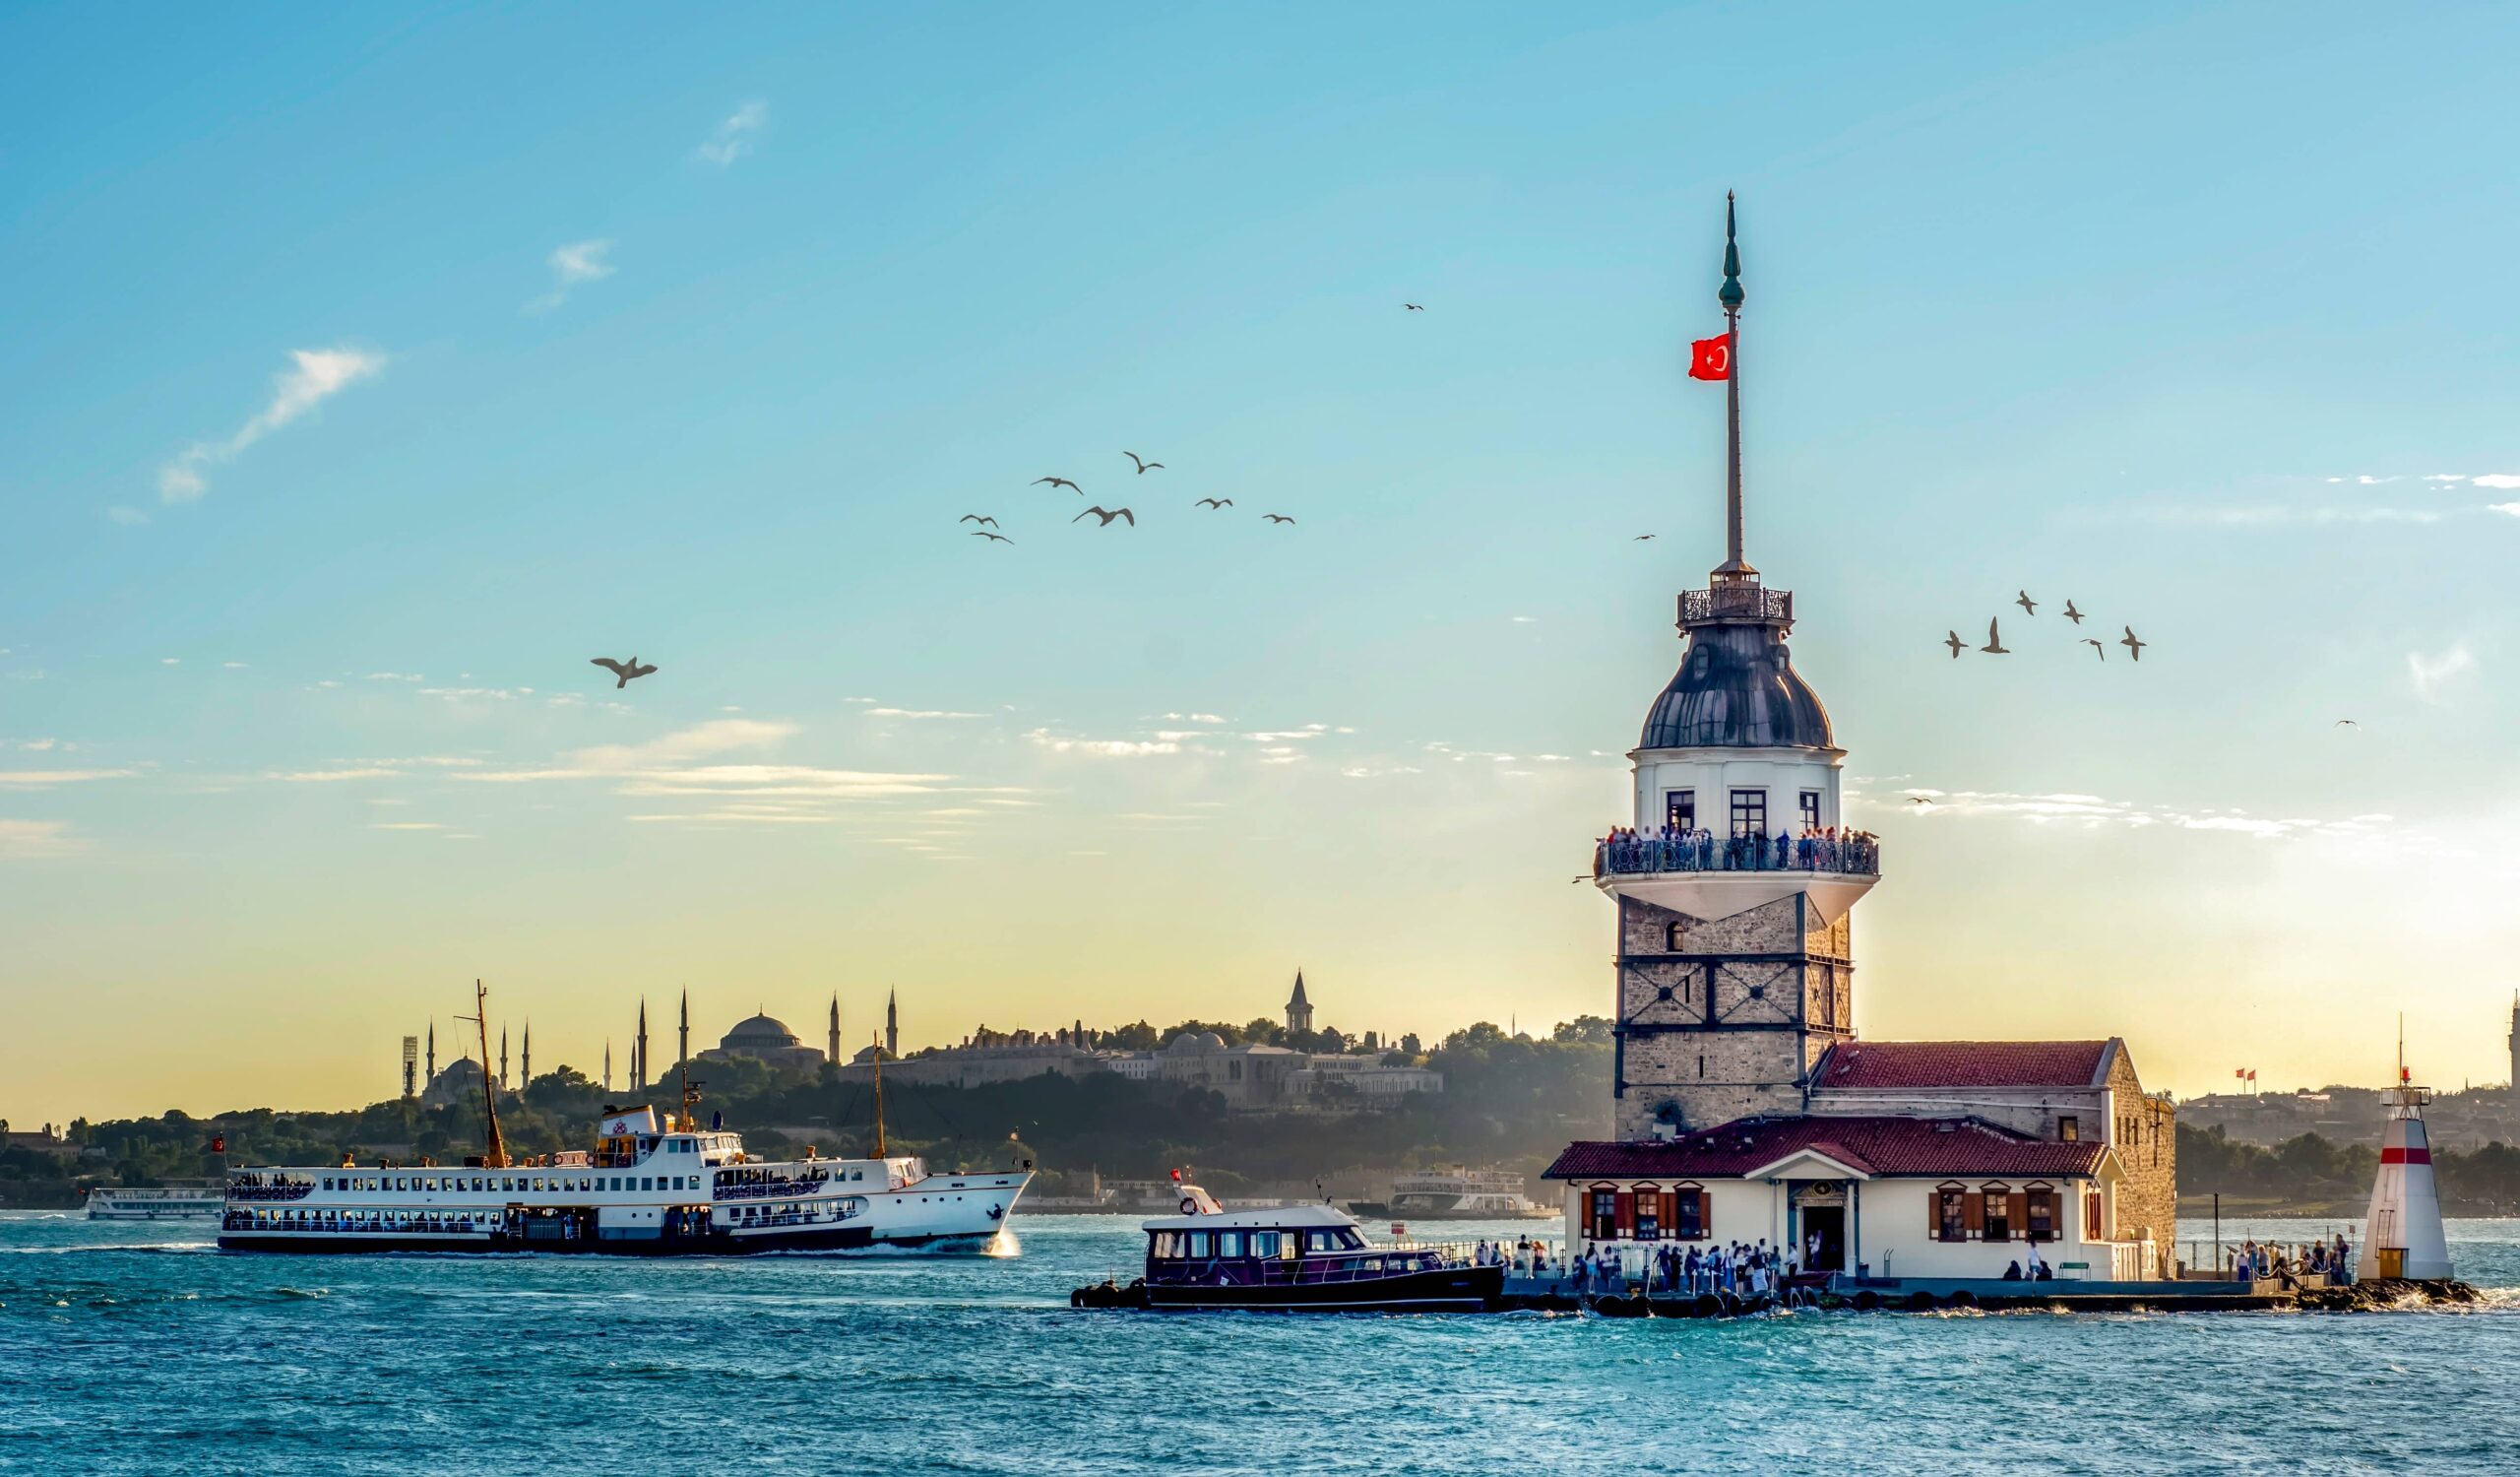 istanbul cruise on bosphorus scaled